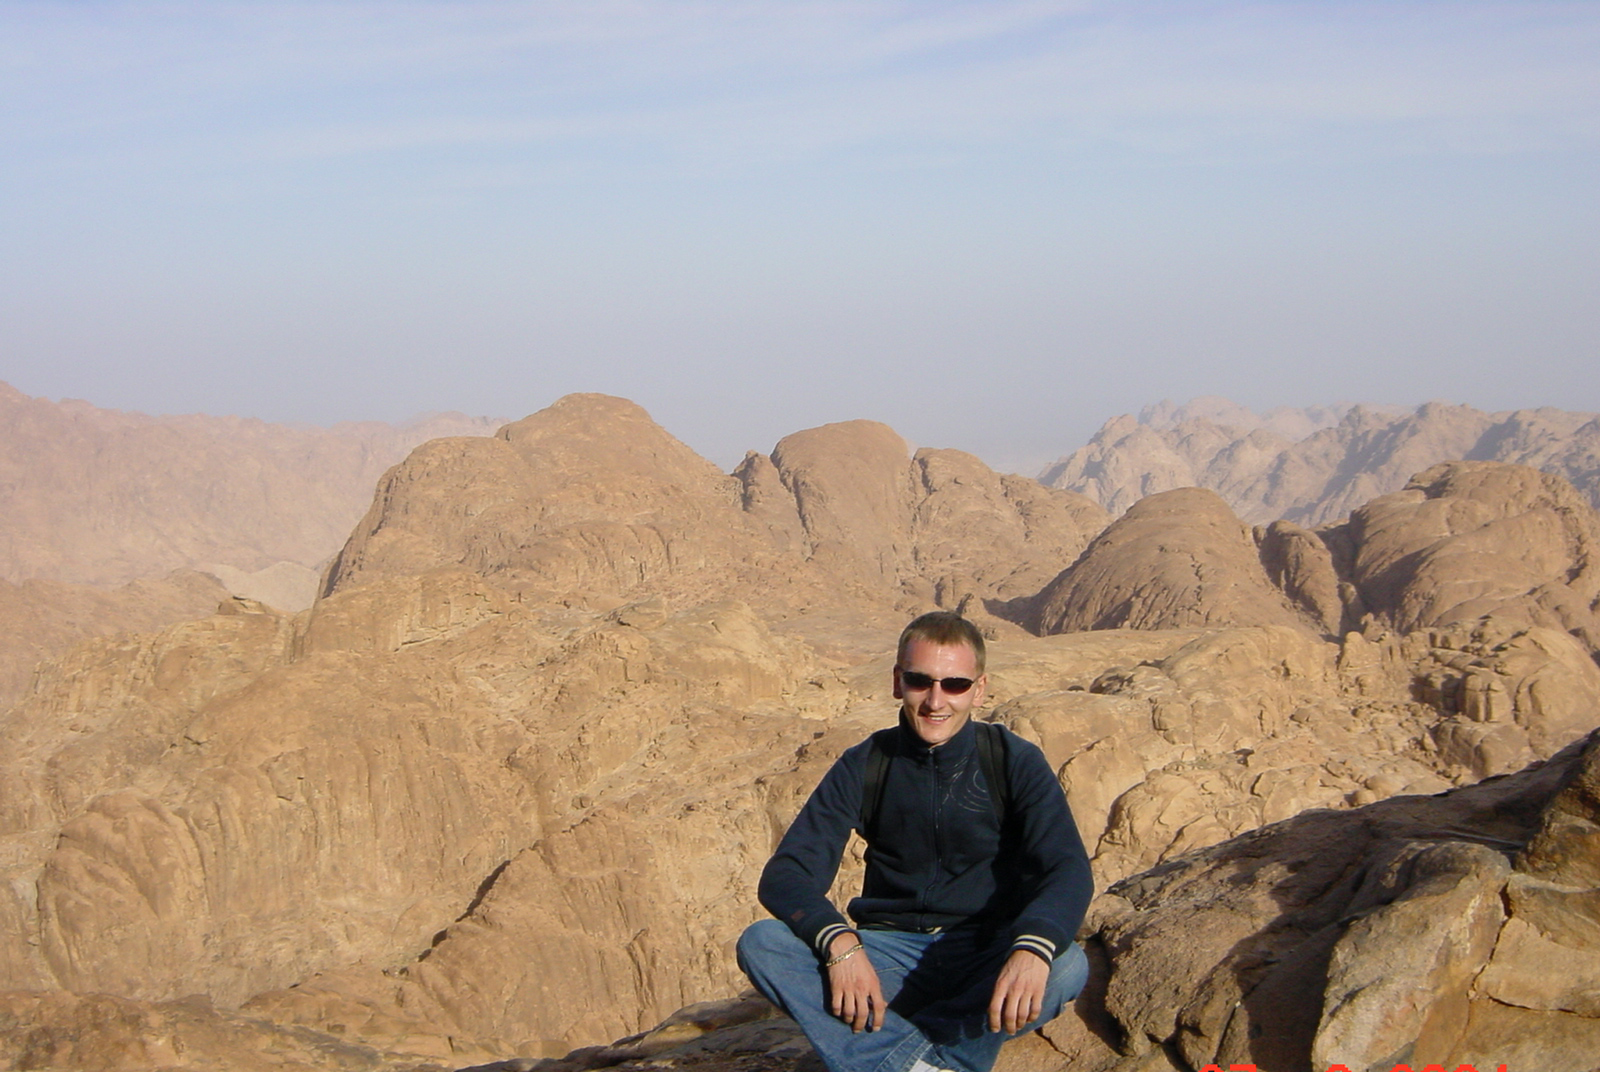 
Экскурсия на гору Синай из Шарм эль Шейха